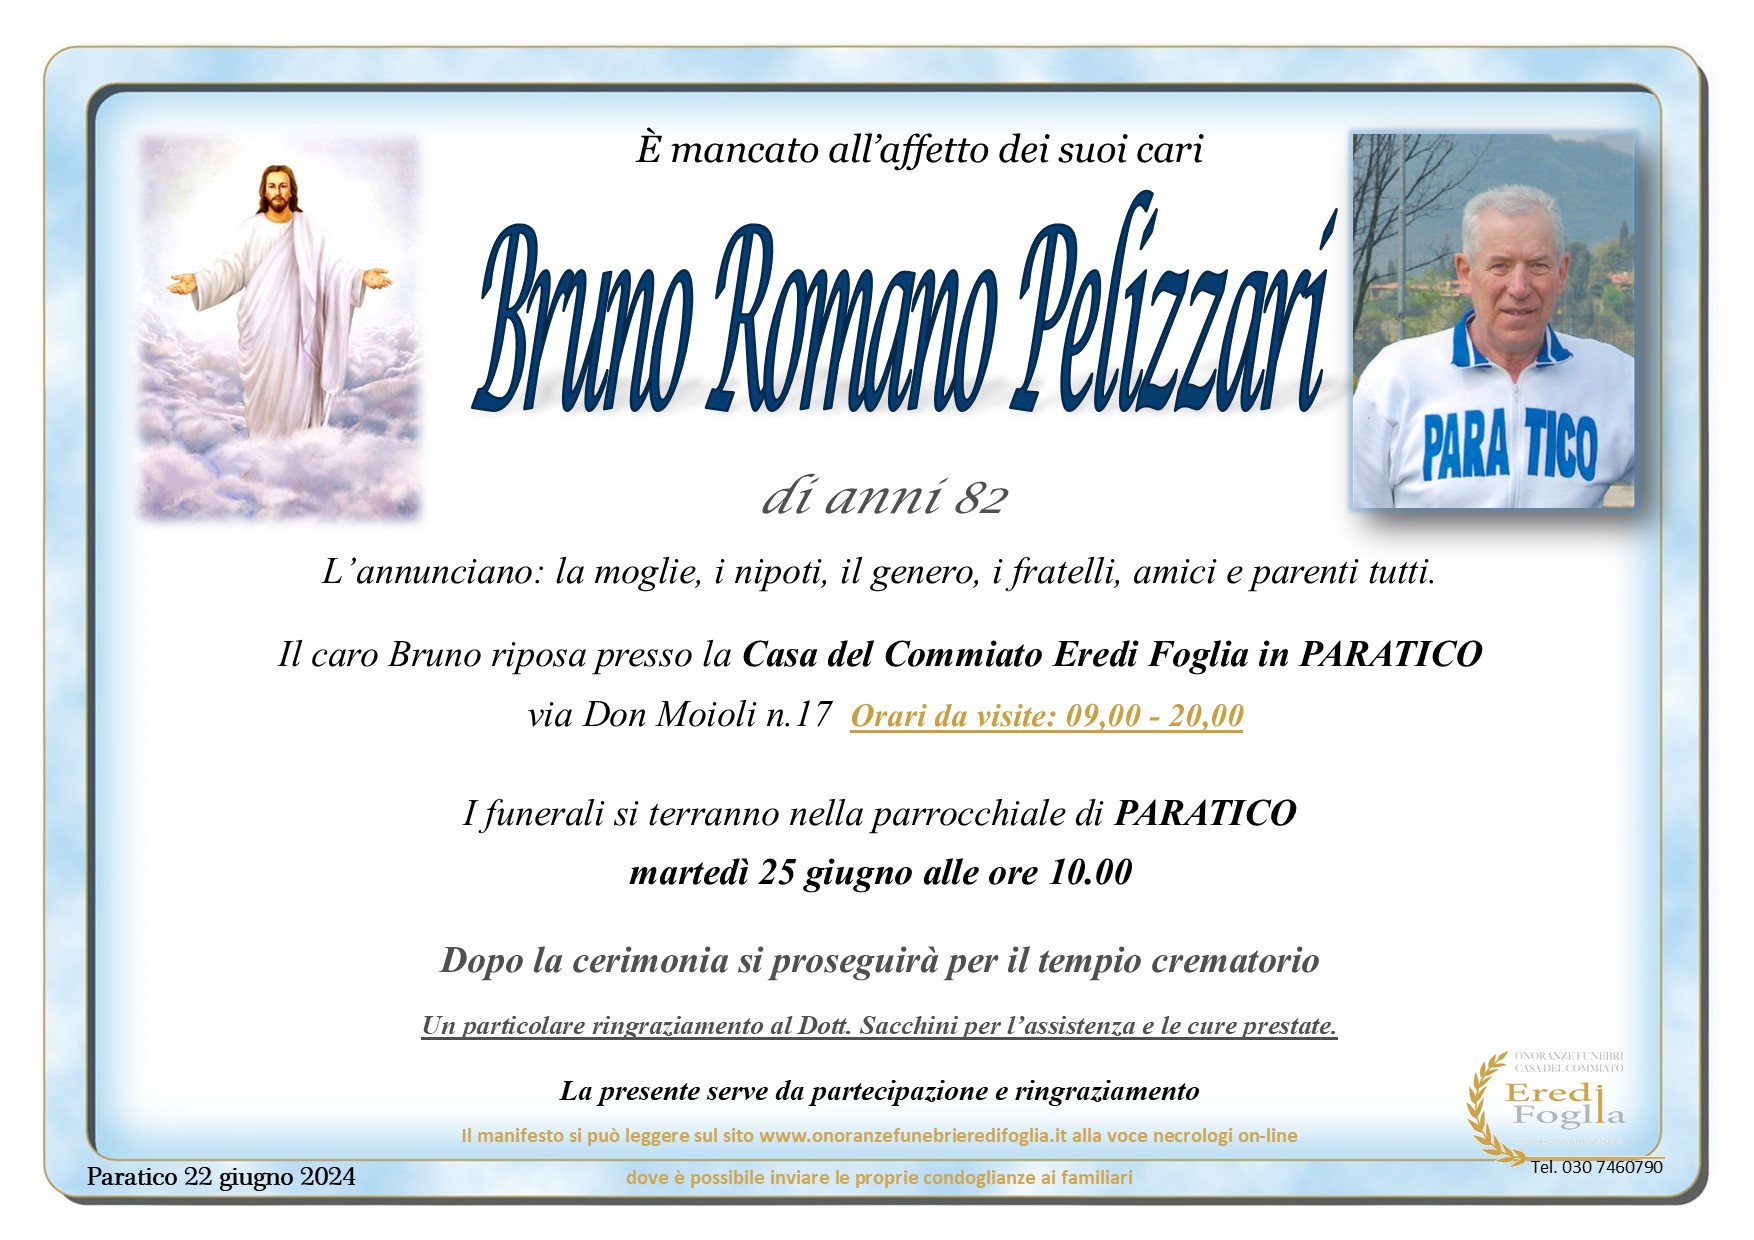 Pelizzari Bruno Romano